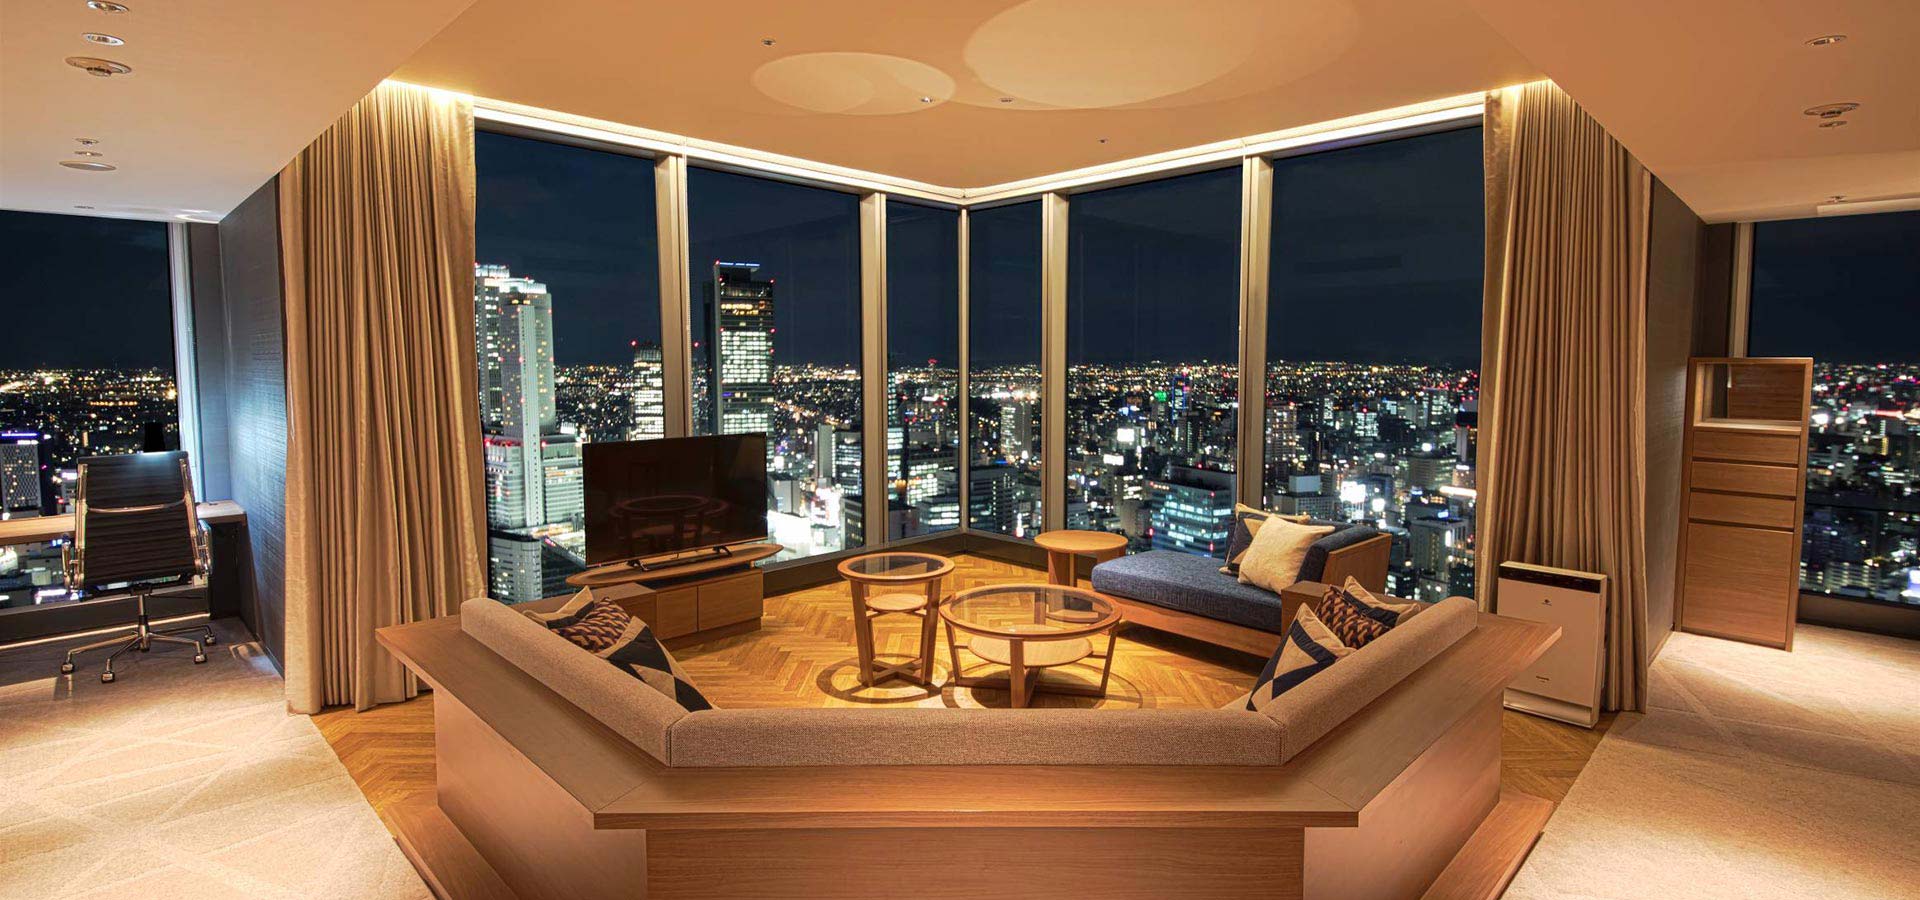 Nagoya Prince Hotel Sky Tower - Official website